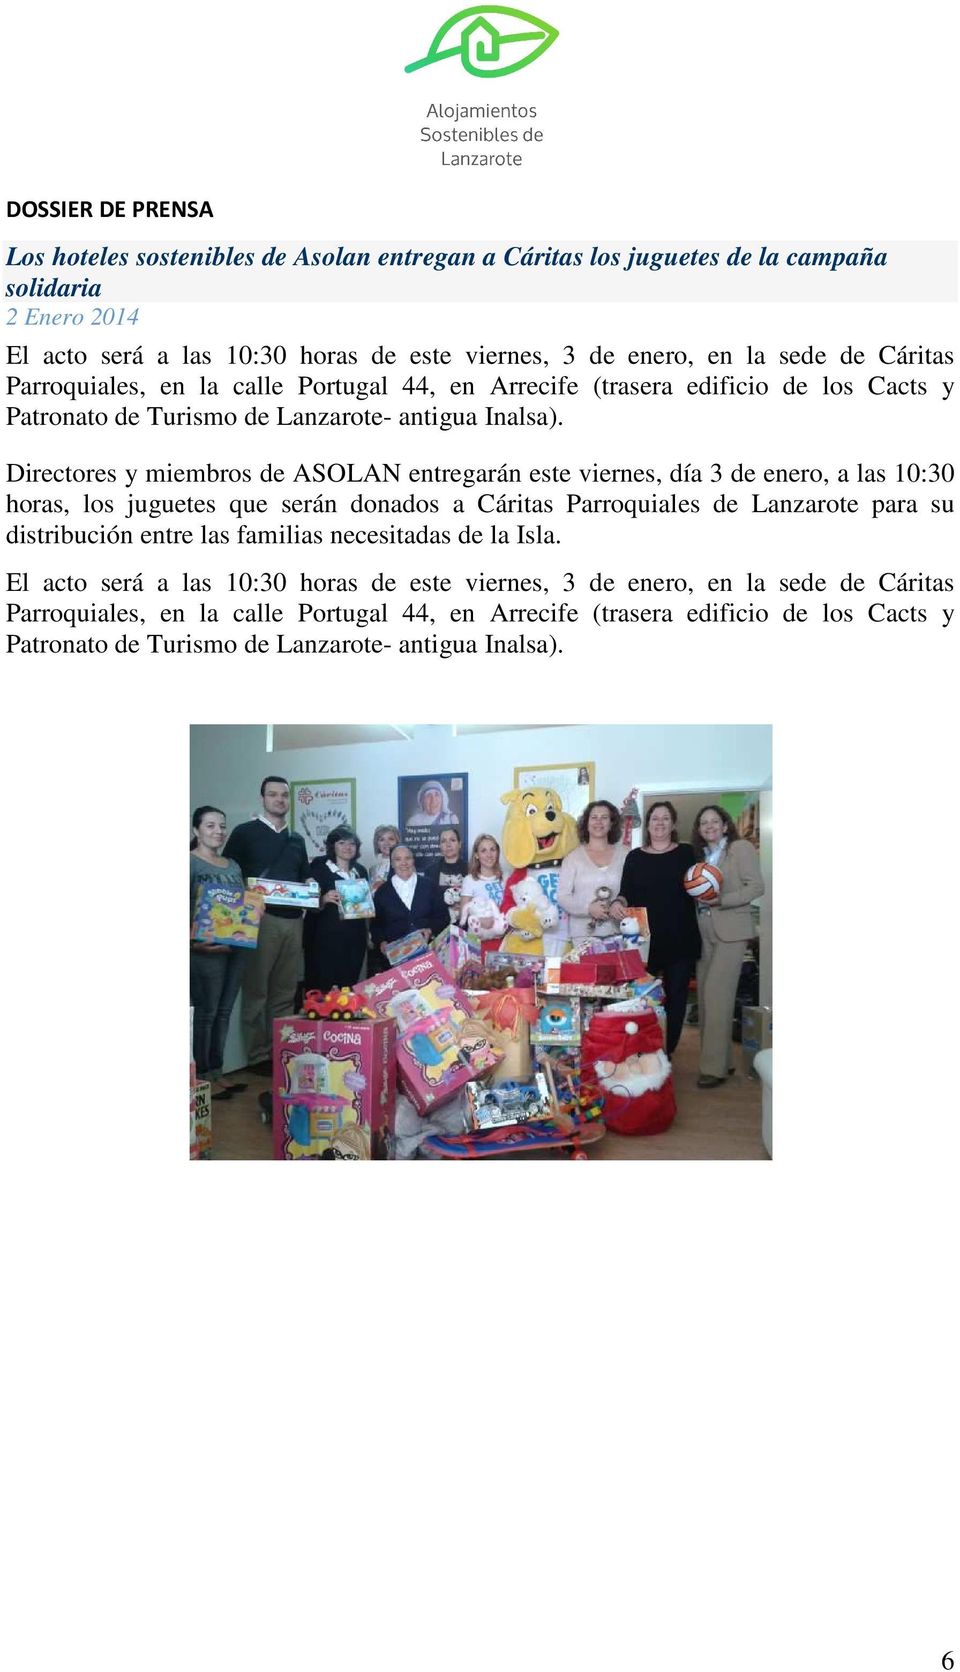 Directores y miembros de ASOLAN entregarán este viernes, día 3 de enero, a las 10:30 horas, los juguetes que serán donados a Cáritas Parroquiales de Lanzarote para su distribución entre las